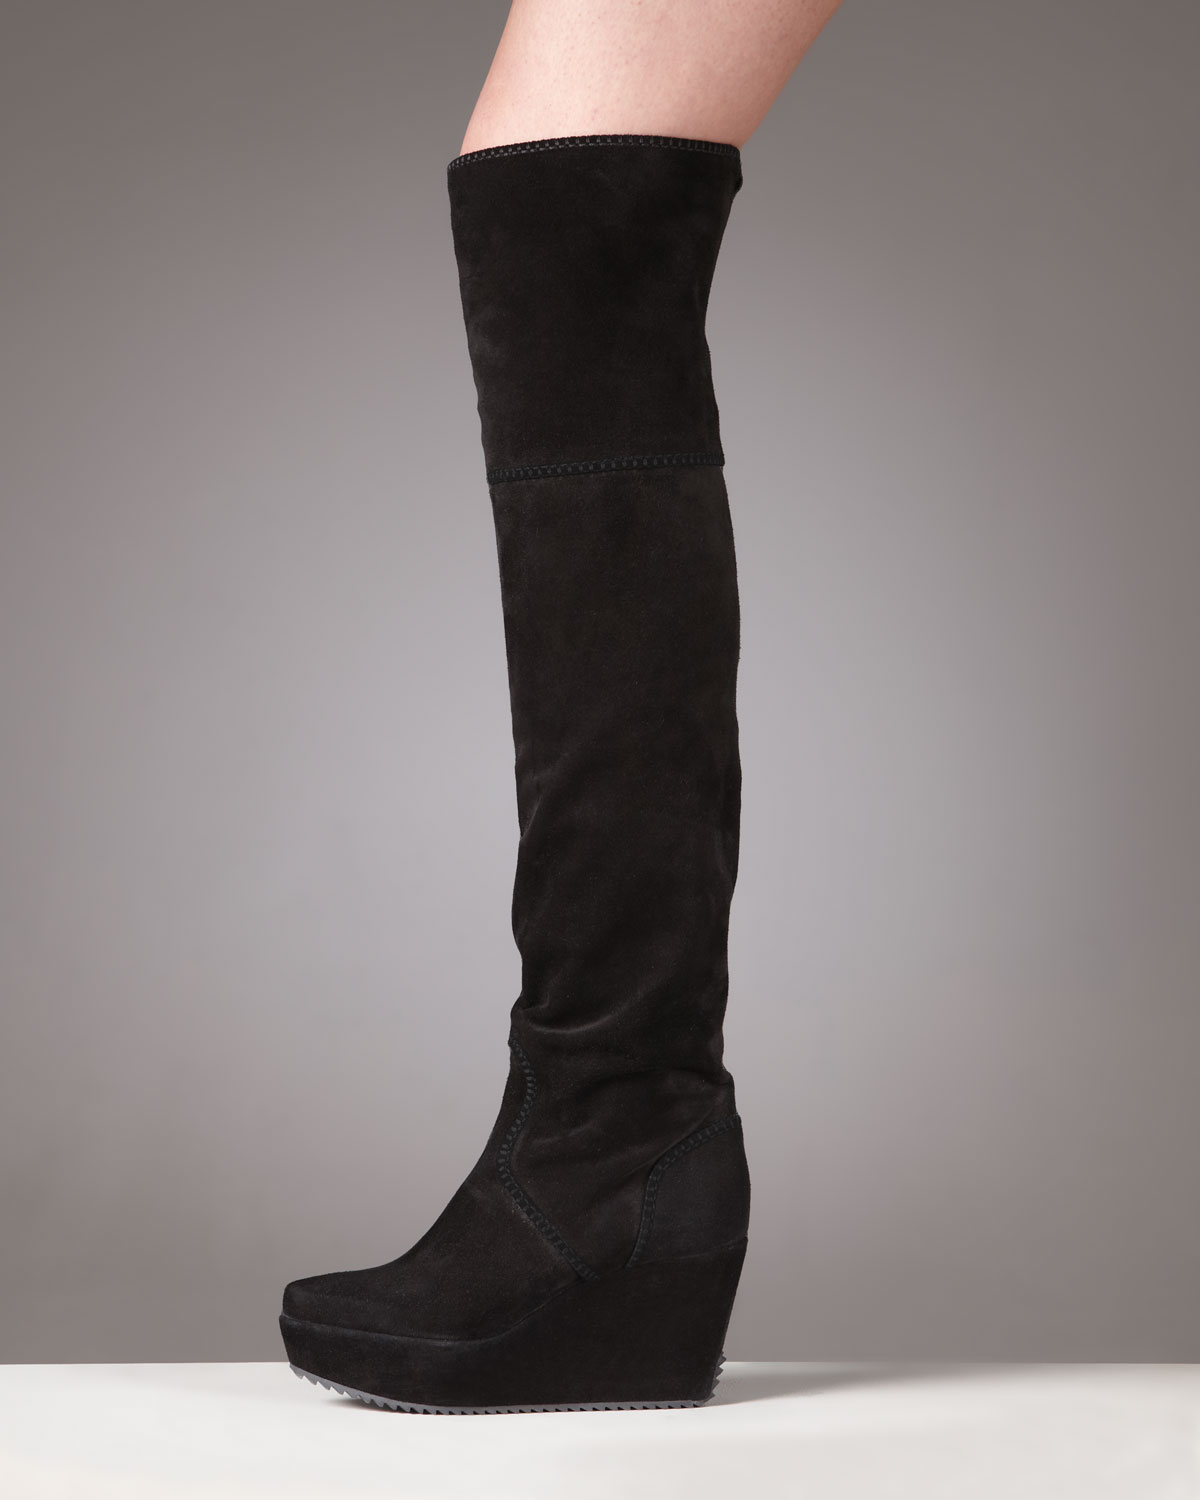 donna karan wedge boots